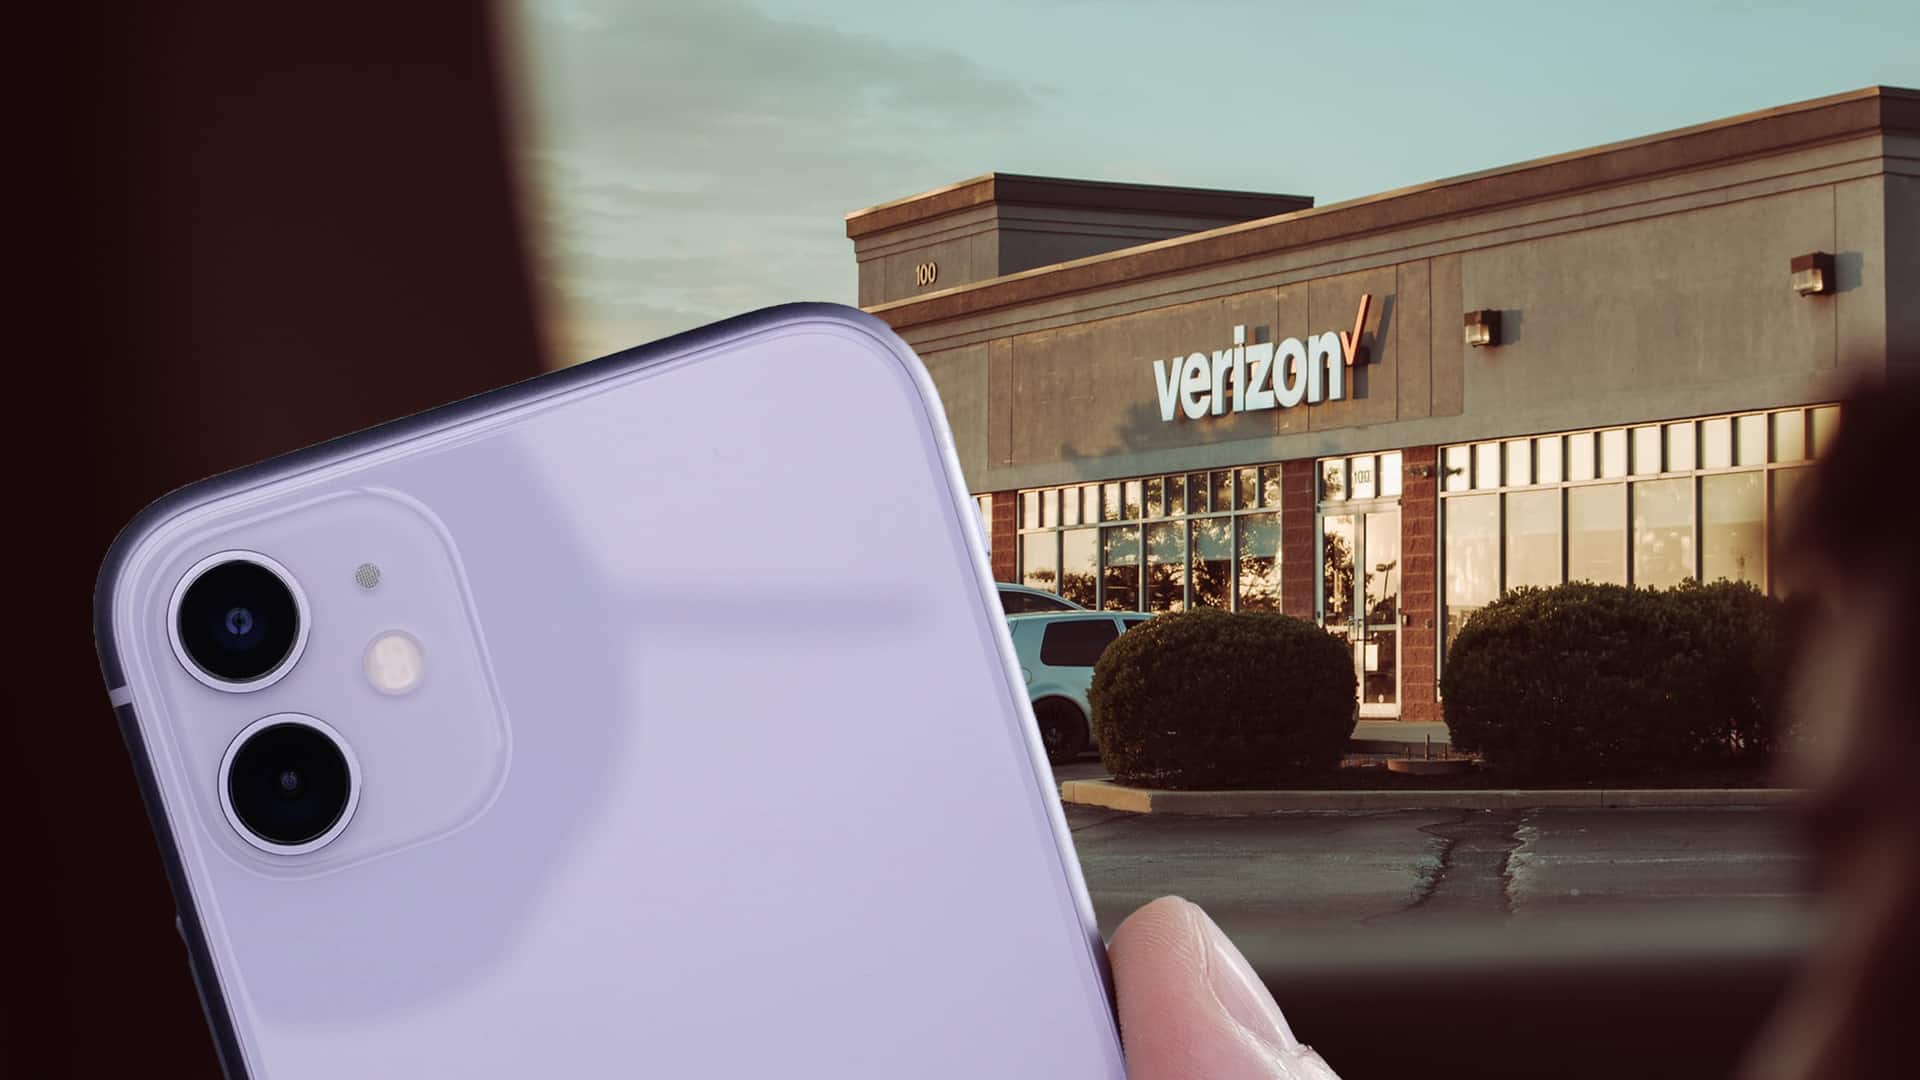 phone and verizon store